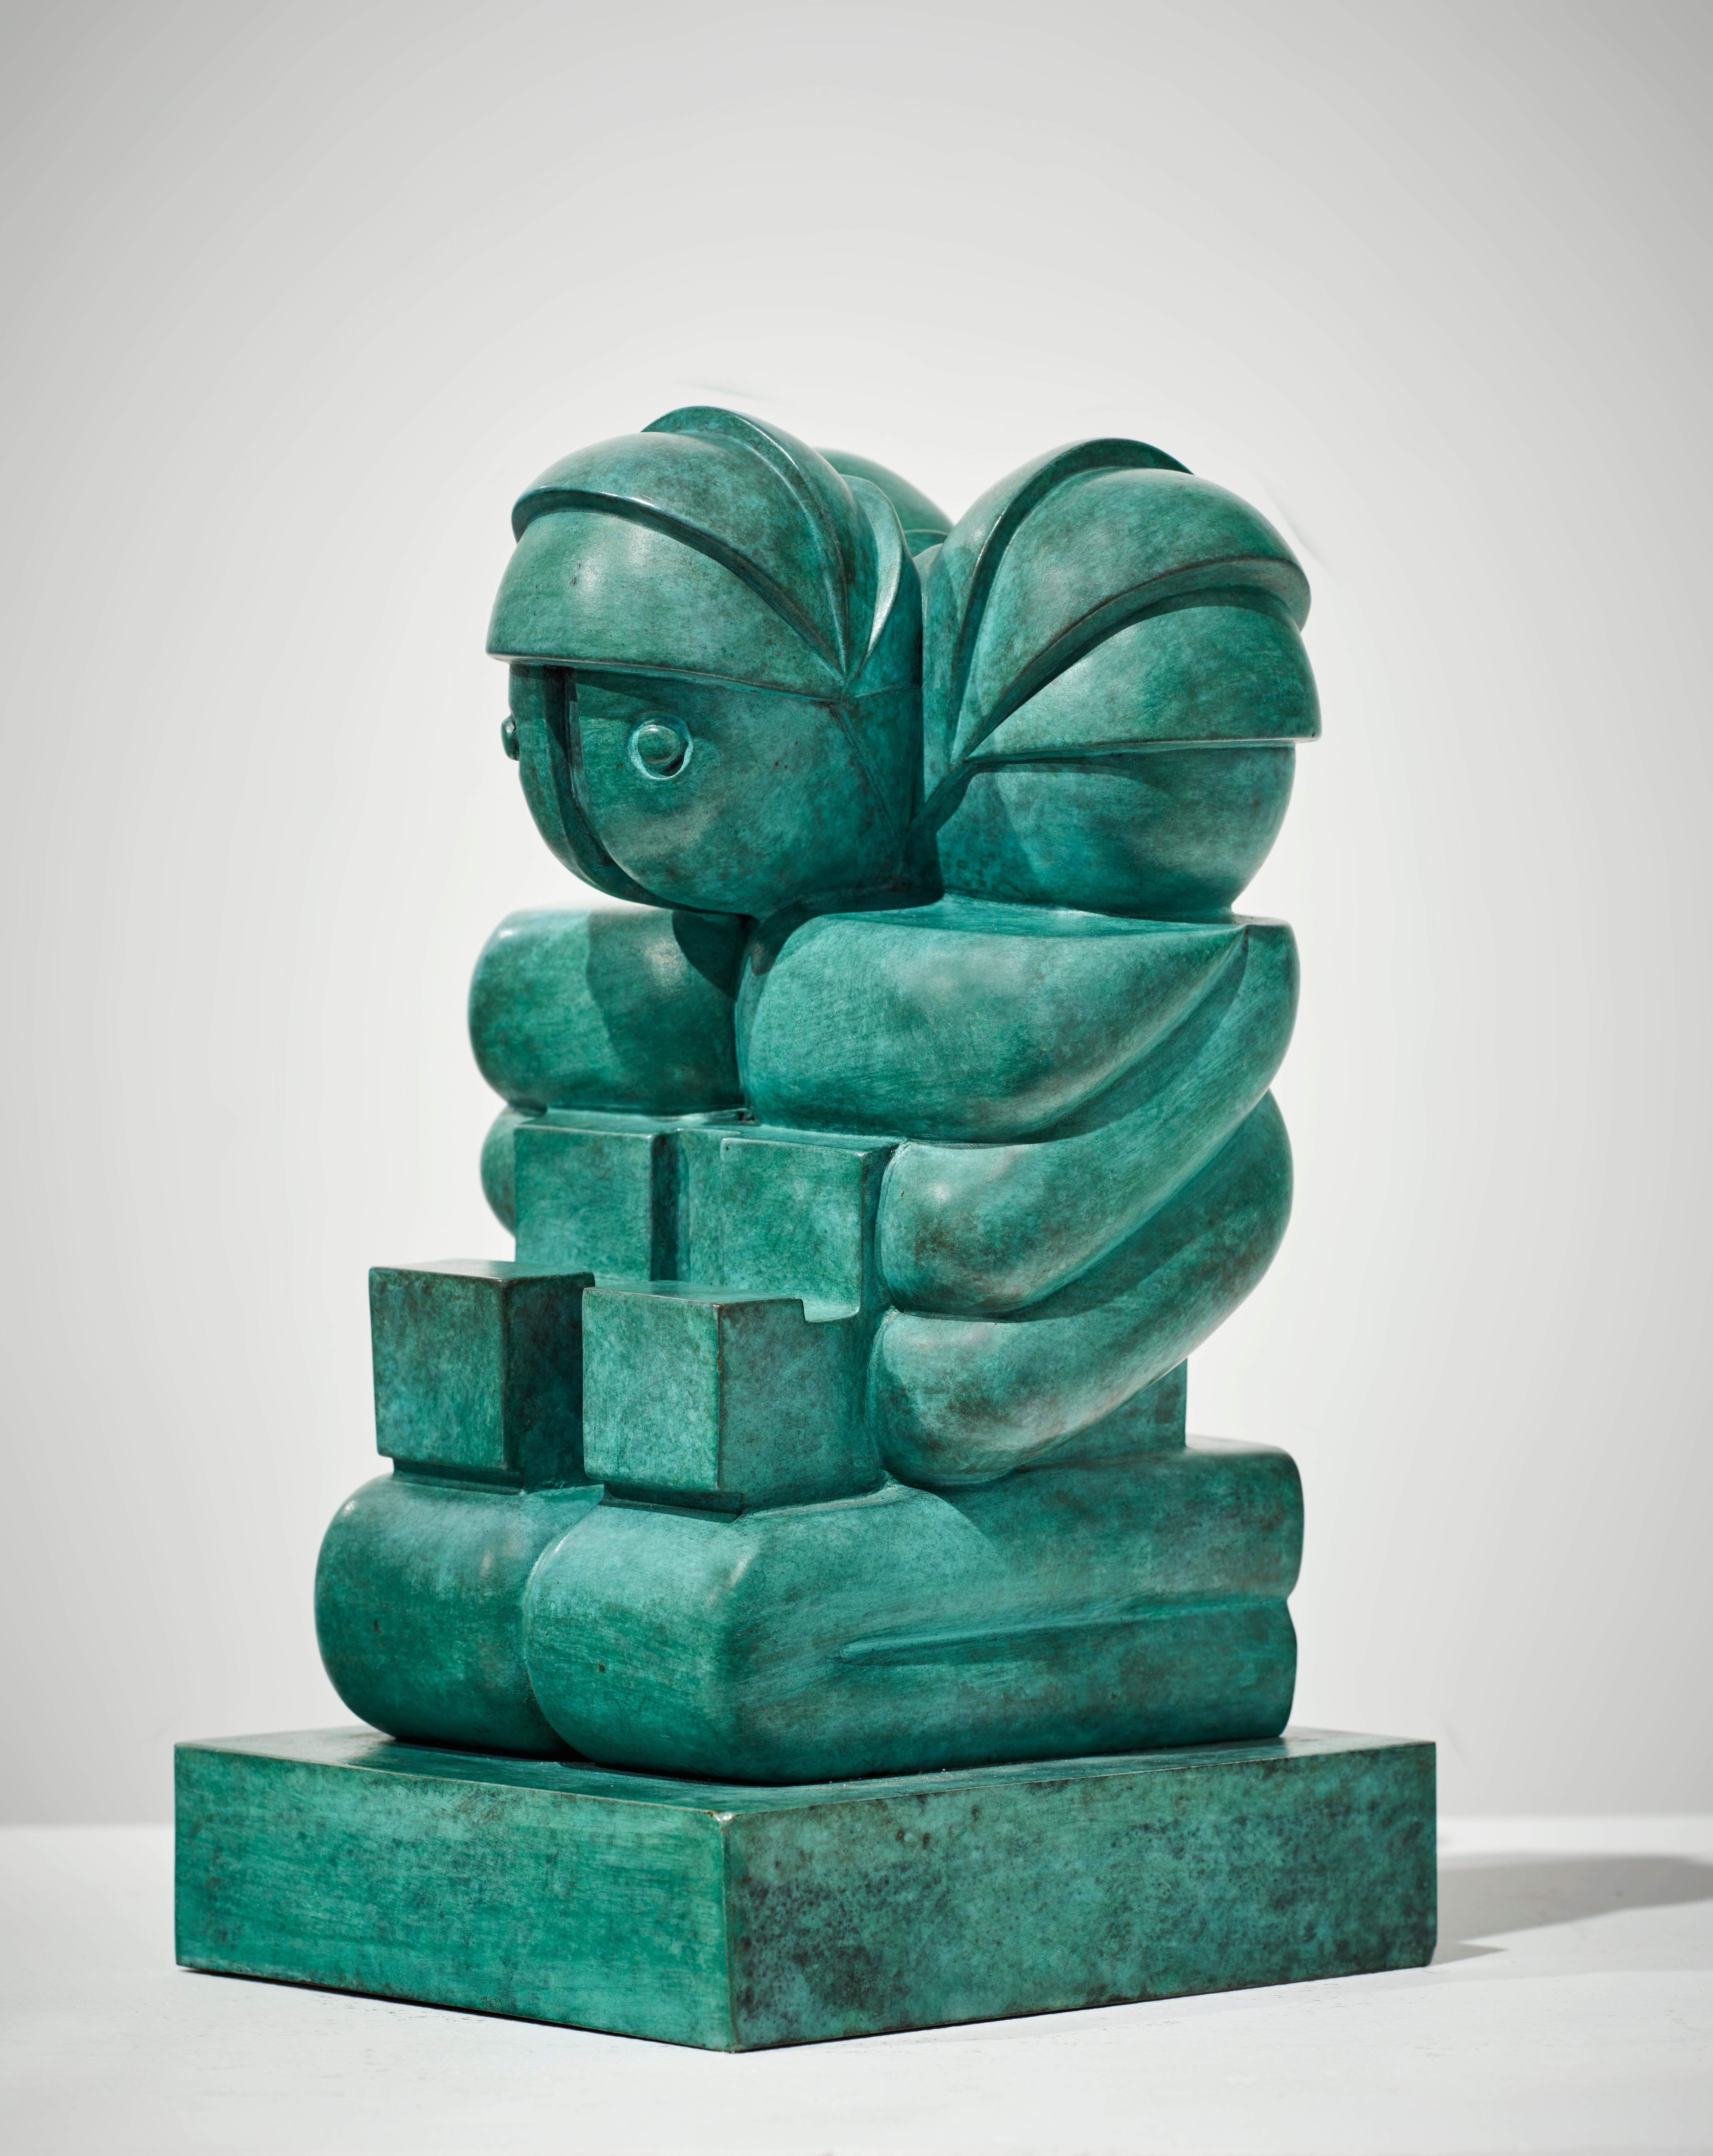 Familia 4/6 - Sculpture by Franco Adami